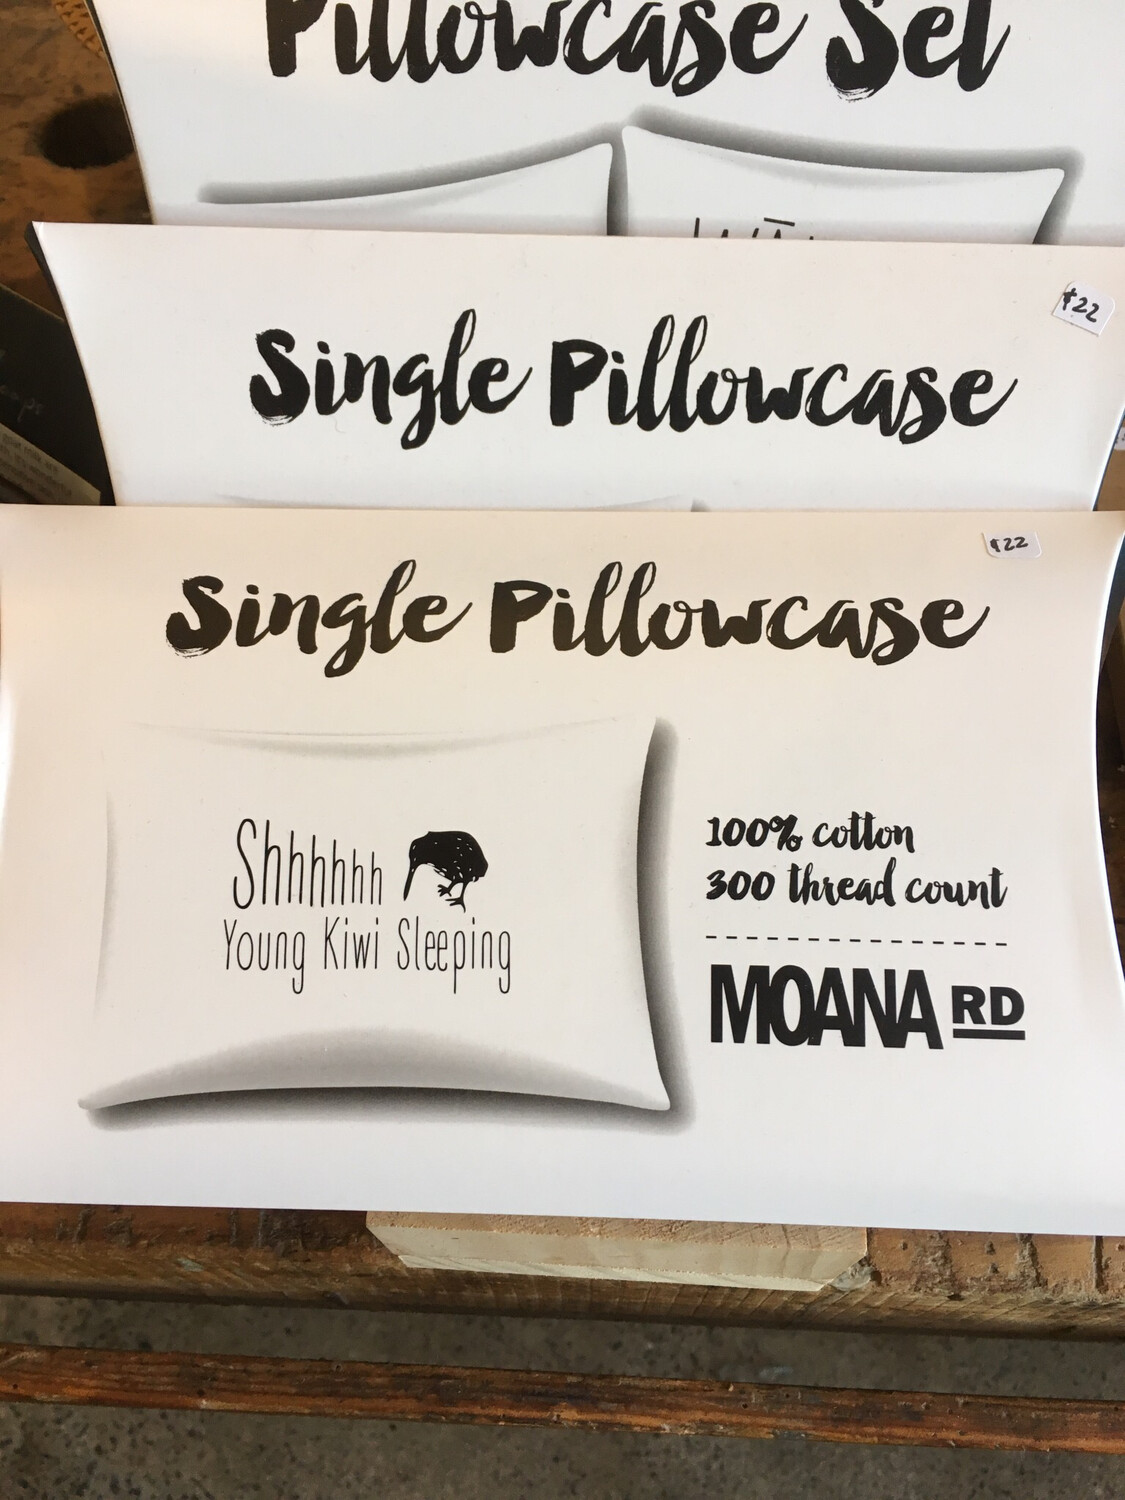 Single Pillowcase Moana Rd Cotton Pillow Case